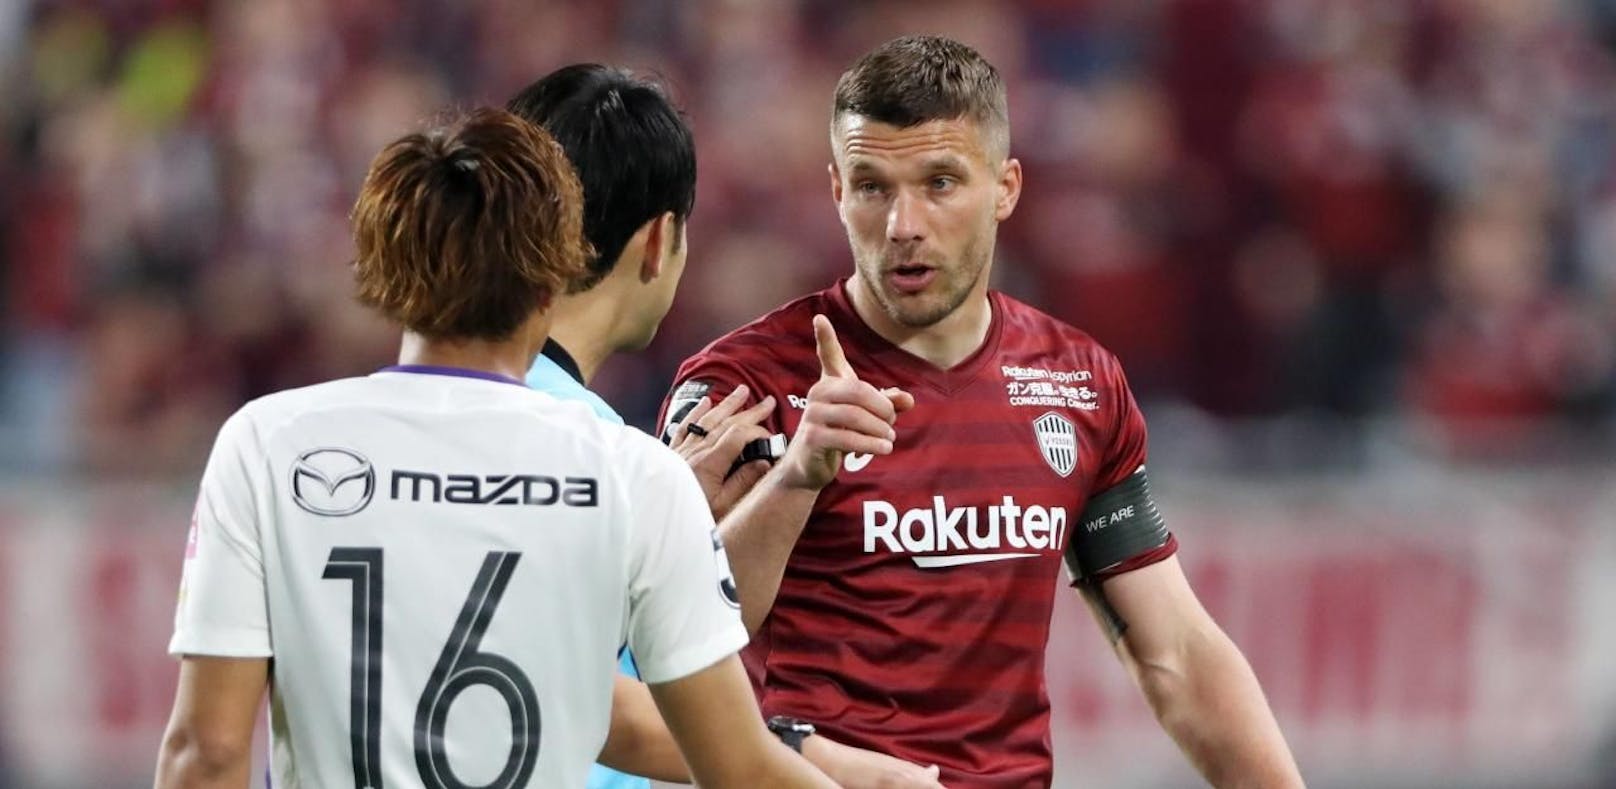 Lukas Podolski beschimpft Ballkind: "Du Hurensohn!"